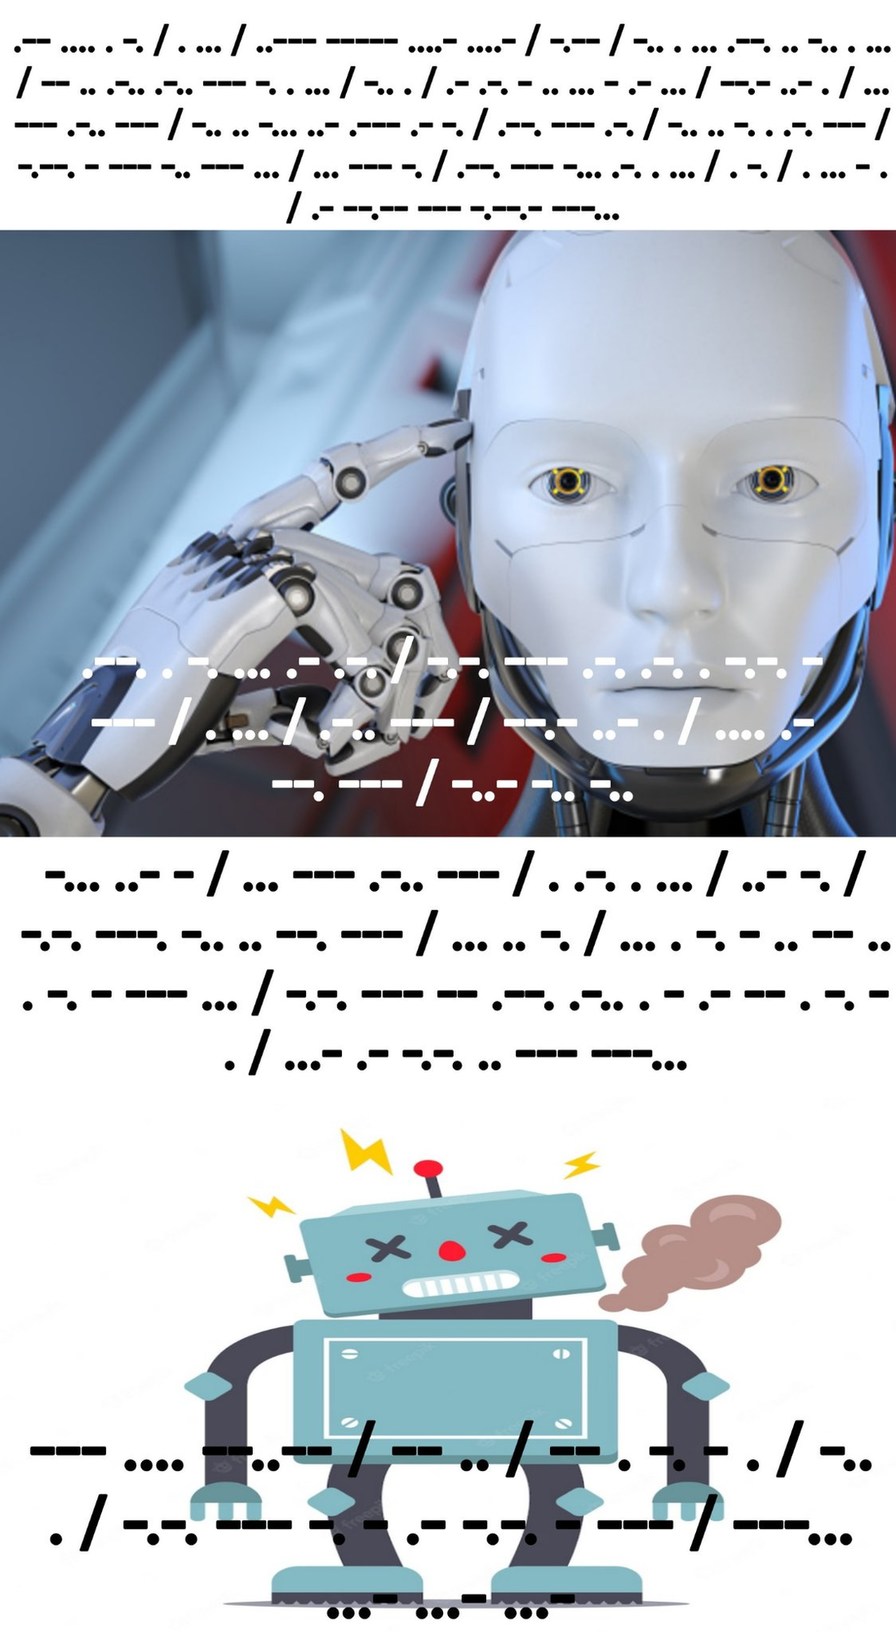 Inteligencia artificial - meme